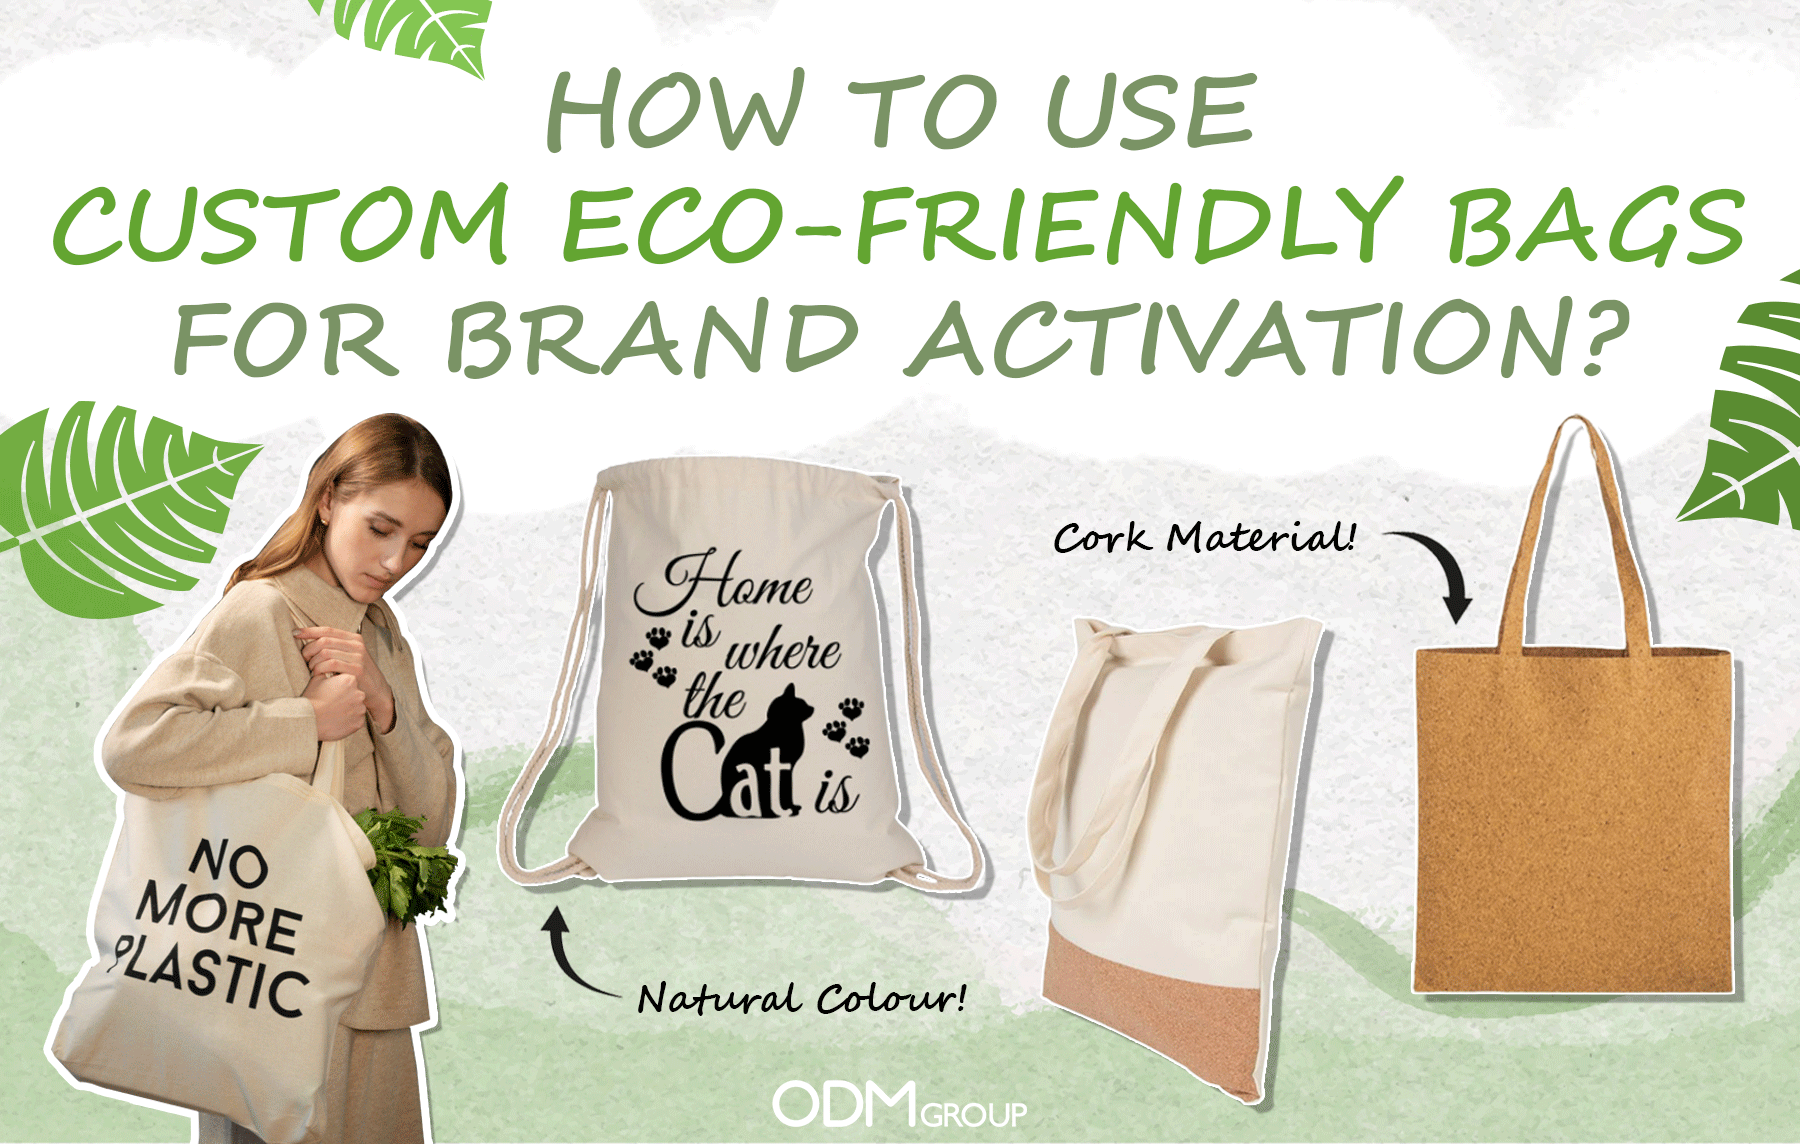 Cork Bags |Shoulder Bag |Eco Friendly Bag |Vegan Bags |BAGP-090 Bag